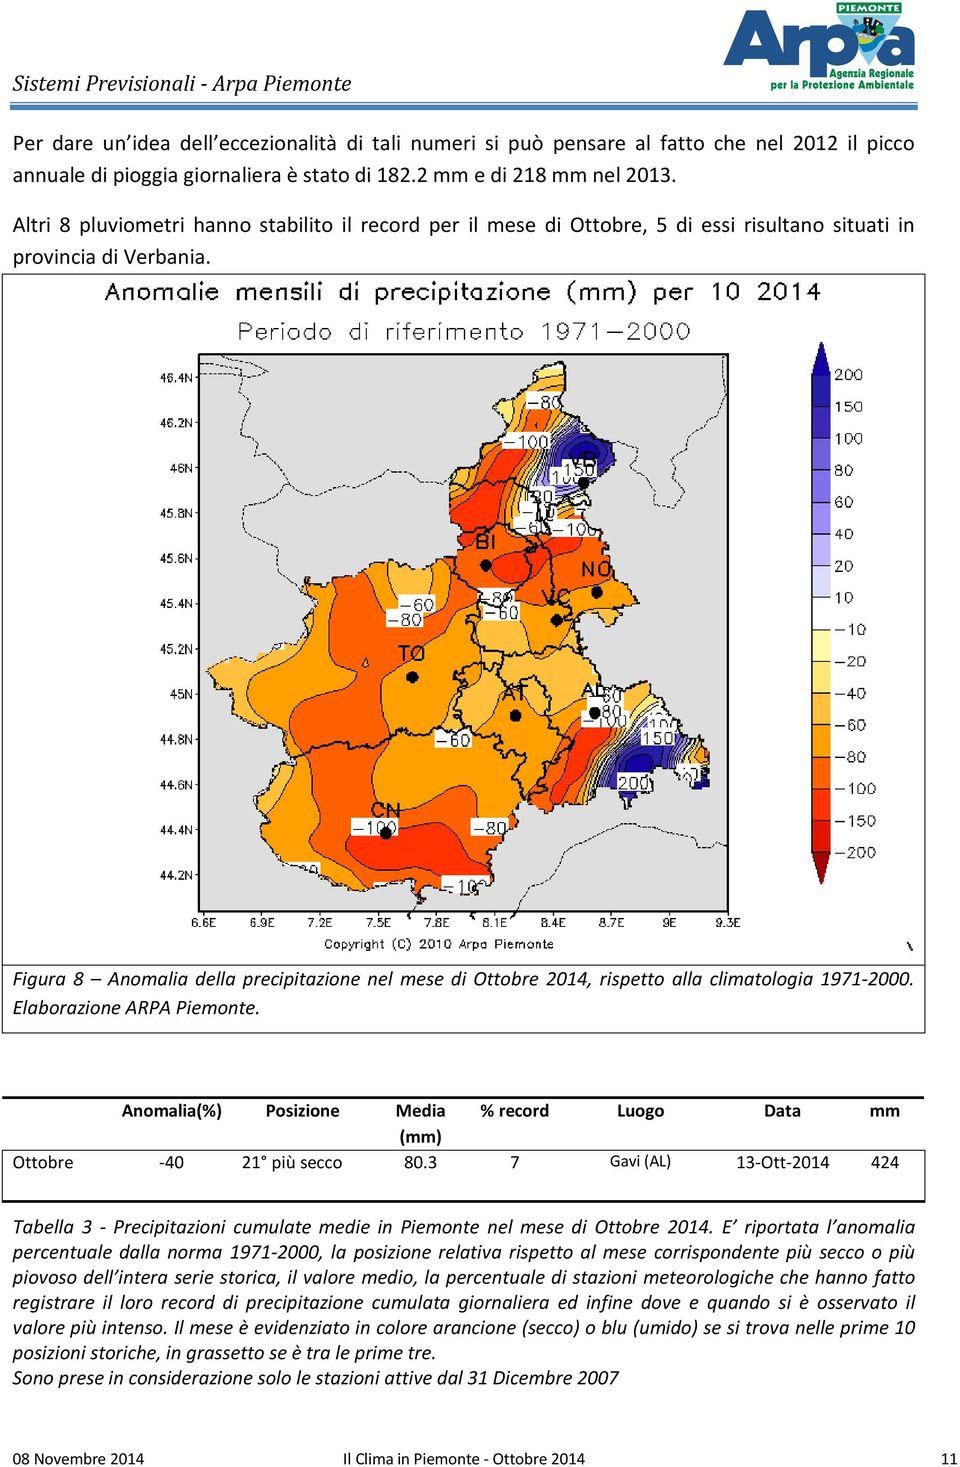 Figura 8 Anomalia della precipitazione nel mese di Ottobre 2014, rispetto alla climatologia 1971-2000. Elaborazione ARPA Piemonte.